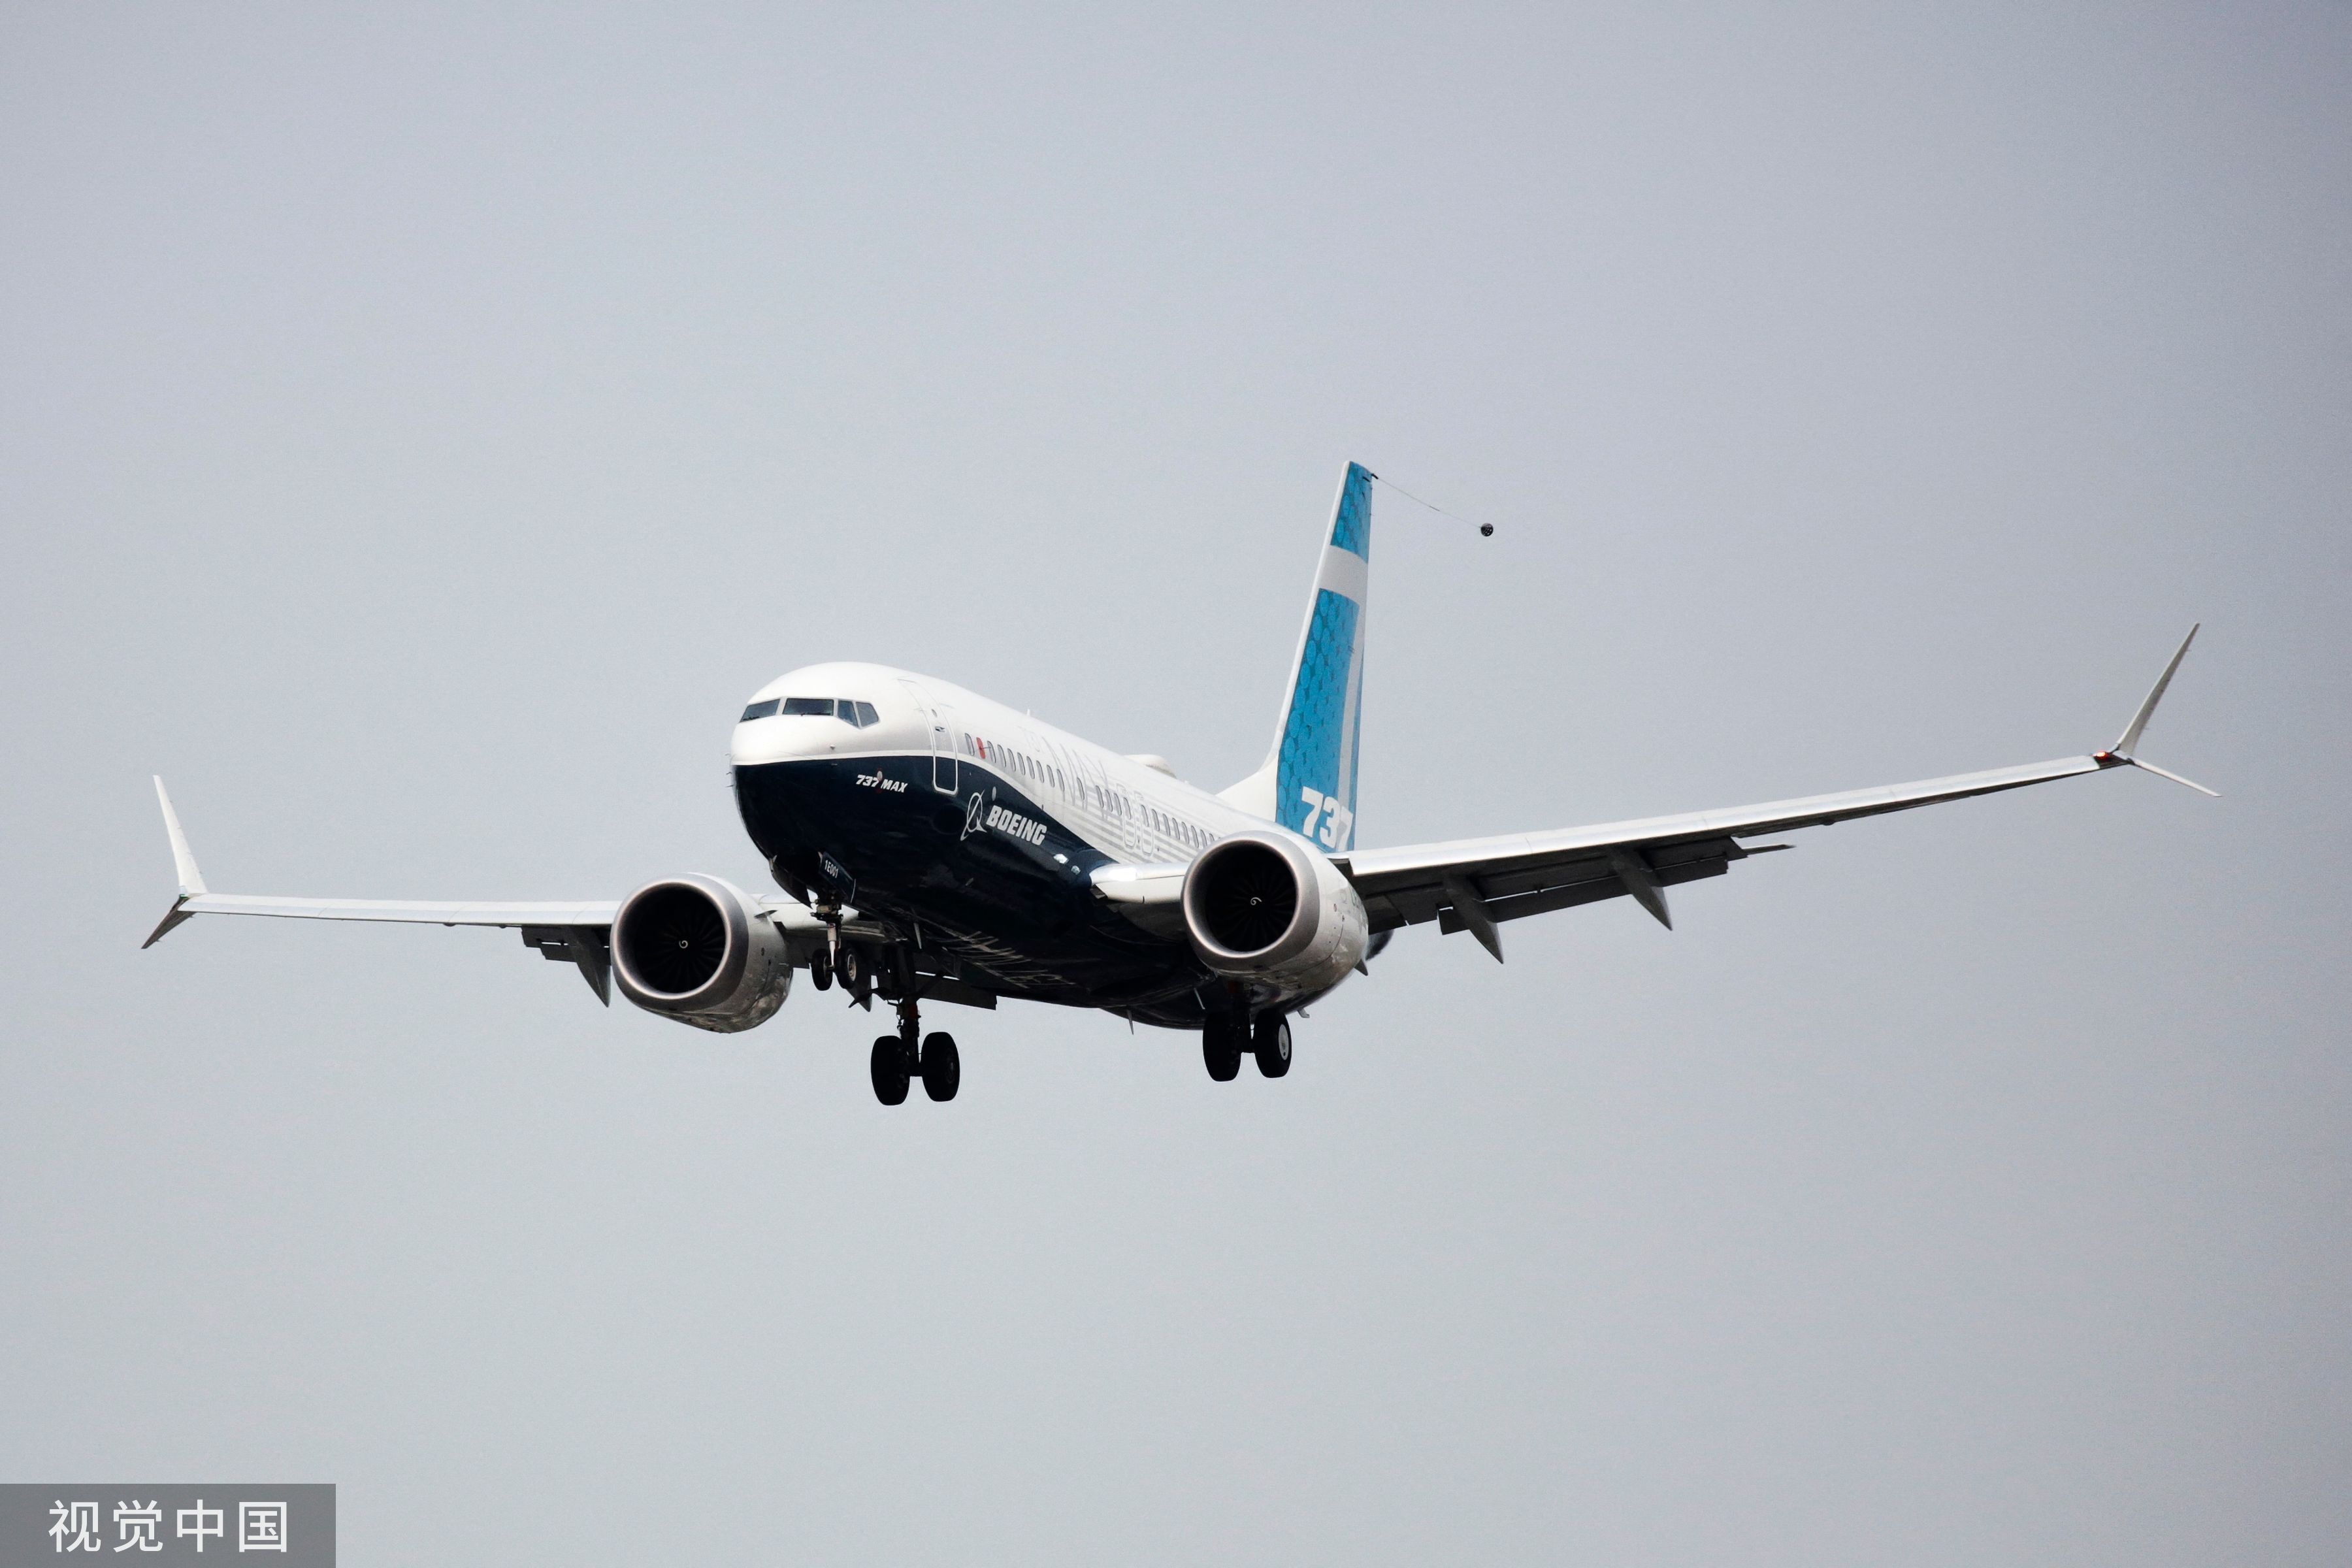 波音737 max空难5年后,美国联邦航空管理局终于宣布调整认证监管